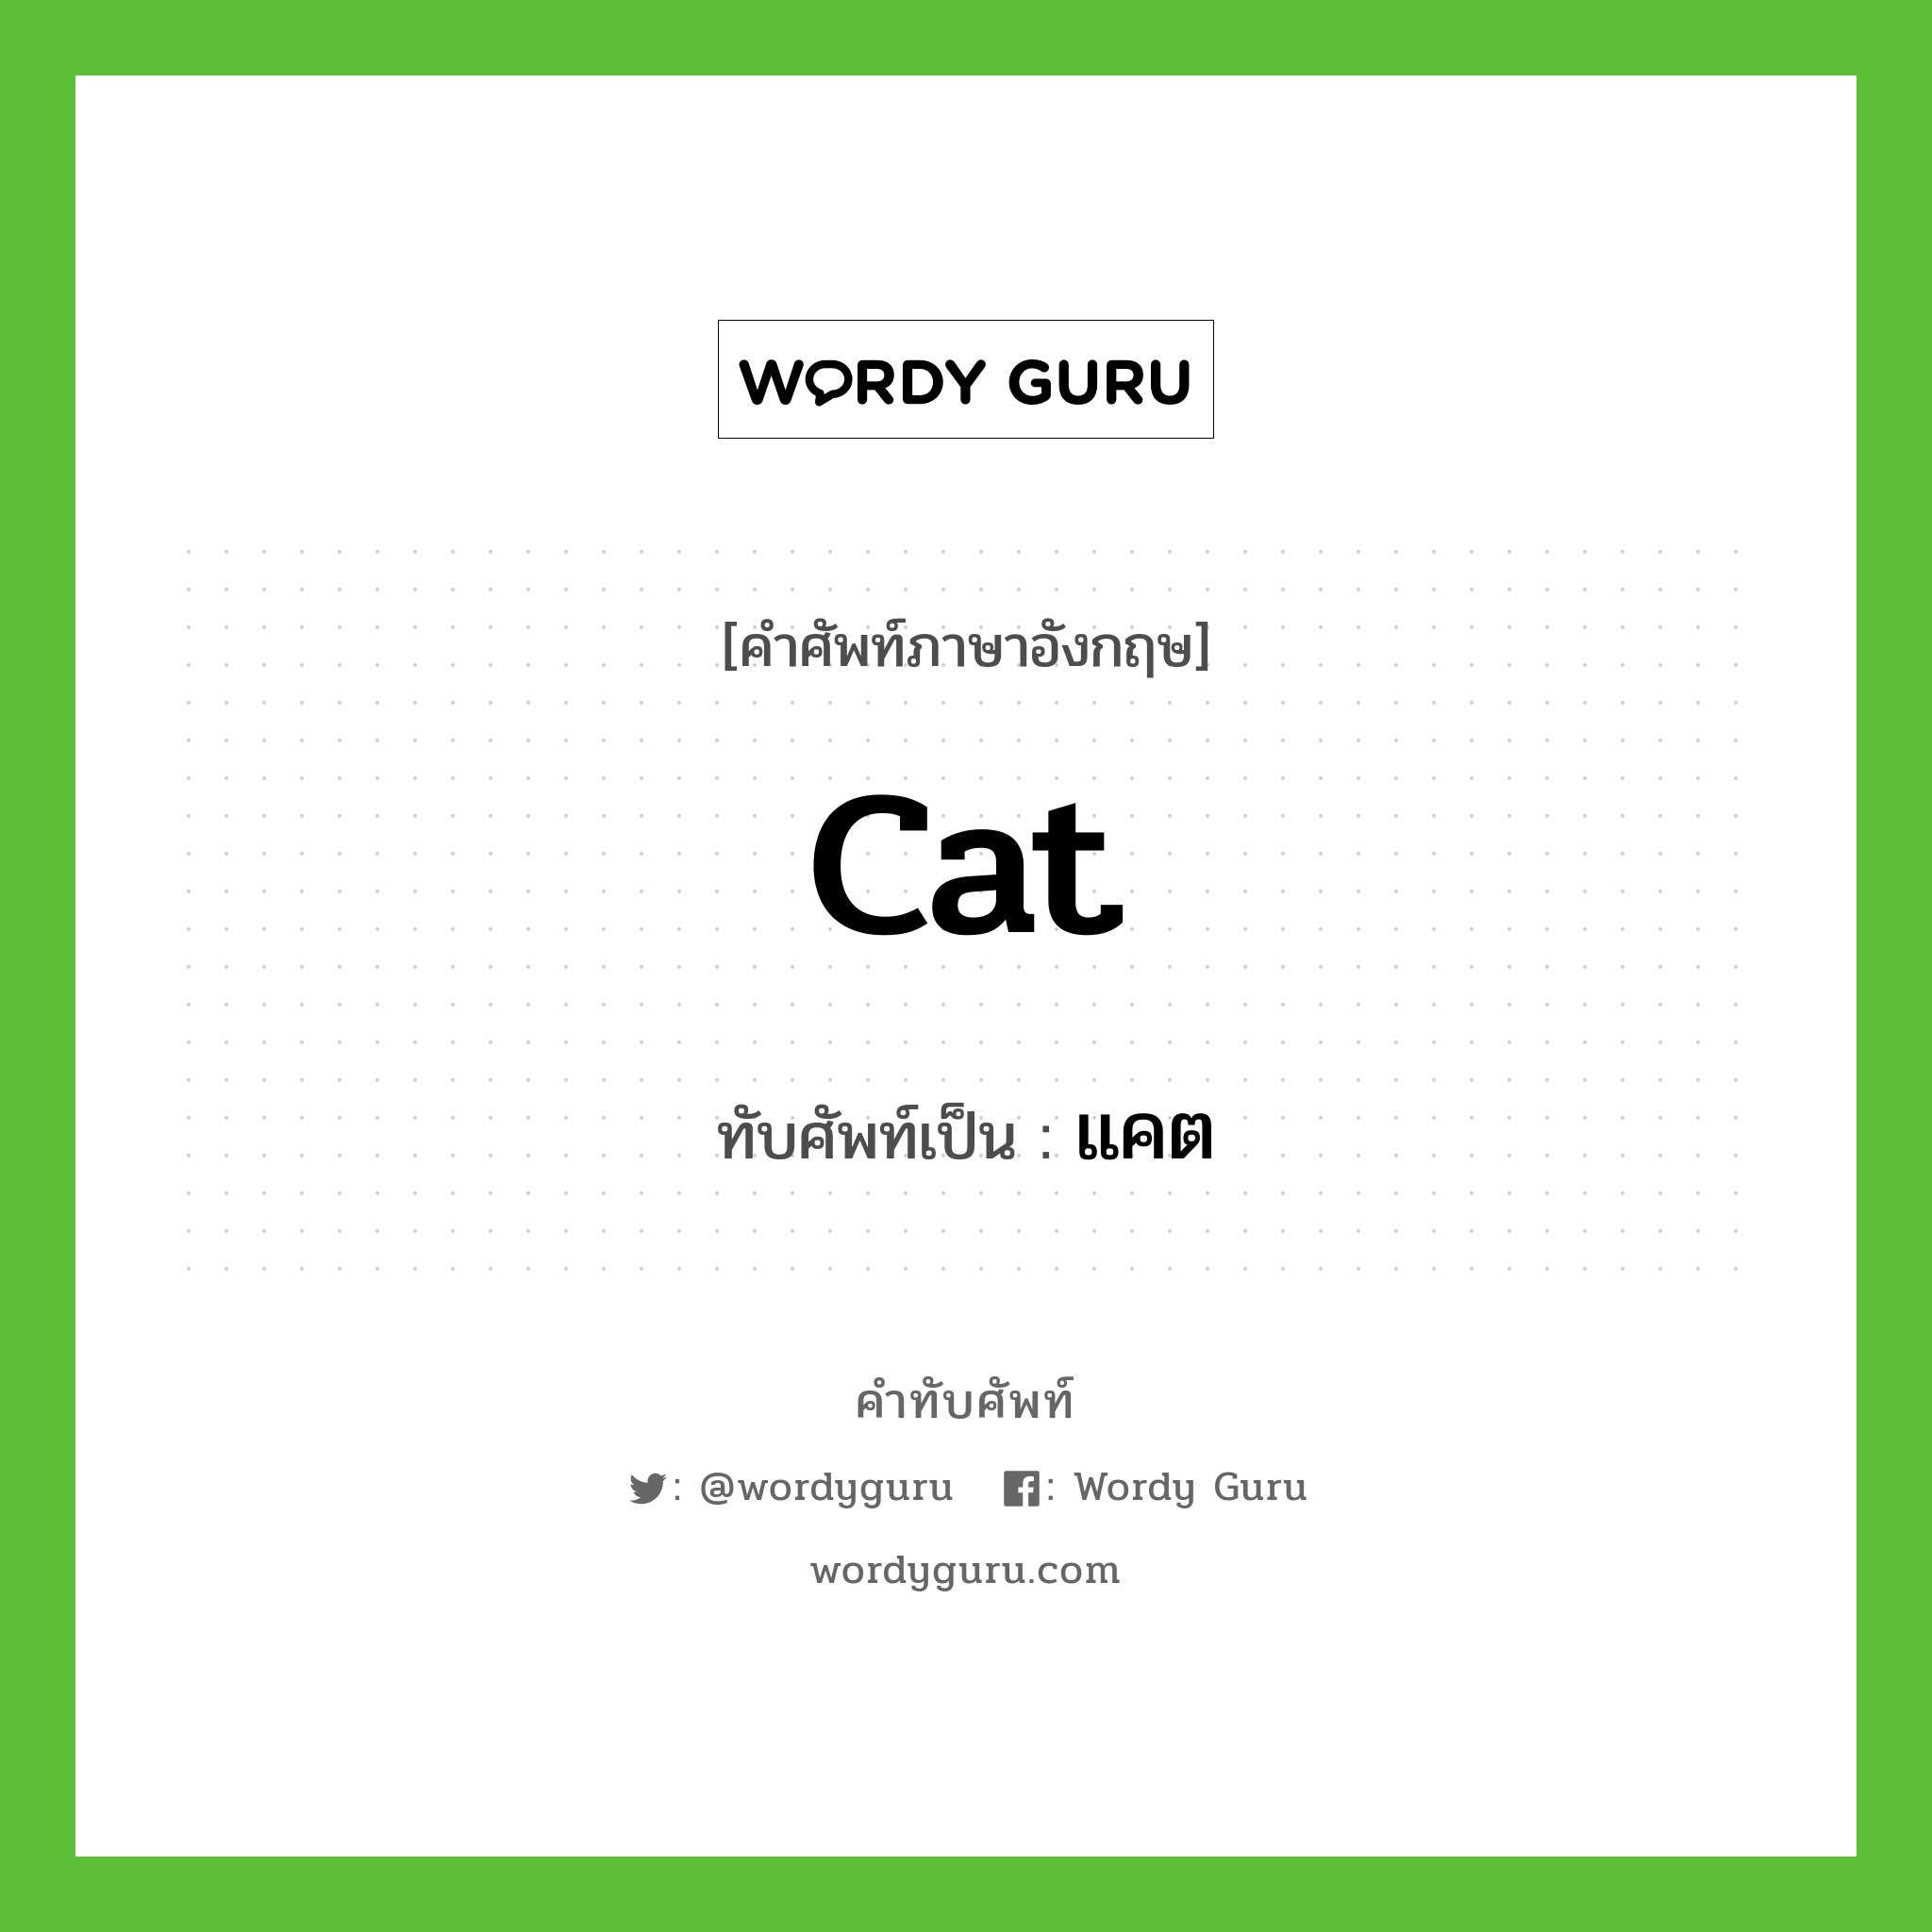 cat เขียนเป็นคำไทยว่าอะไร?, คำศัพท์ภาษาอังกฤษ cat ทับศัพท์เป็น แคต